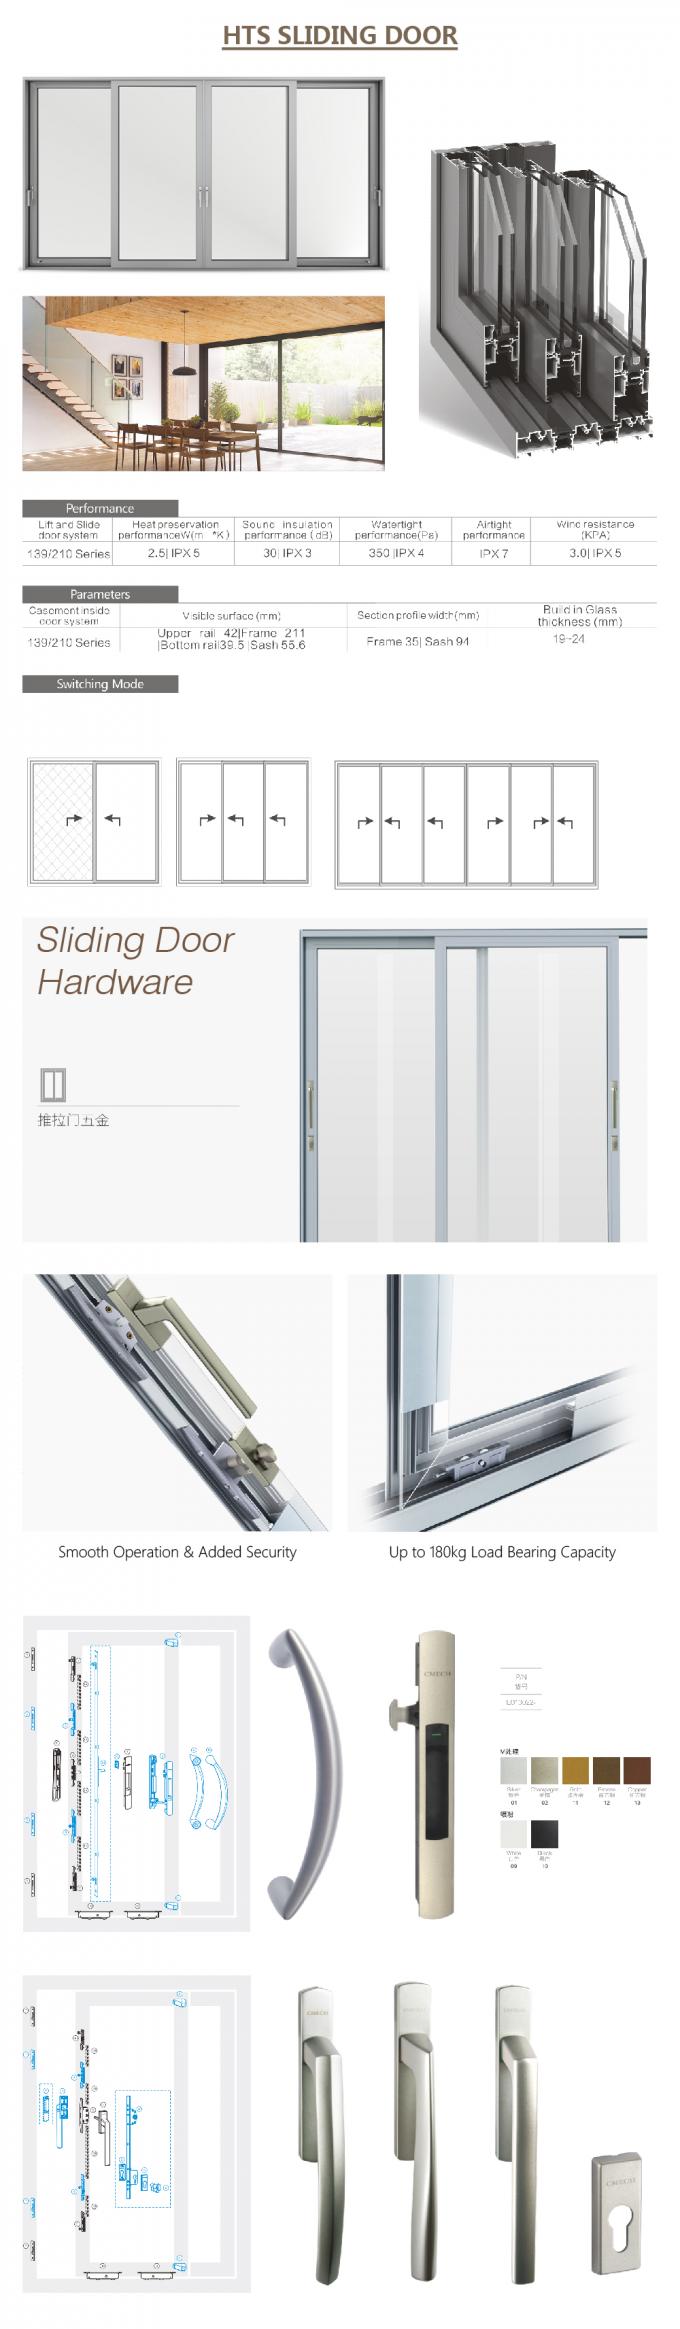 Συρόμενη πόρτα Bifold, κινεζική συρόμενη πόρτα, σχεδιάγραμμα αλουμινίου για τη συρόμενη πόρτα γυαλιού, αυτόματη πόρτα που, συρόμενη πόρτα αλουμινίου γυαλιού, λεπτομέρειες πορτών ολίσθησης αλουμινίου